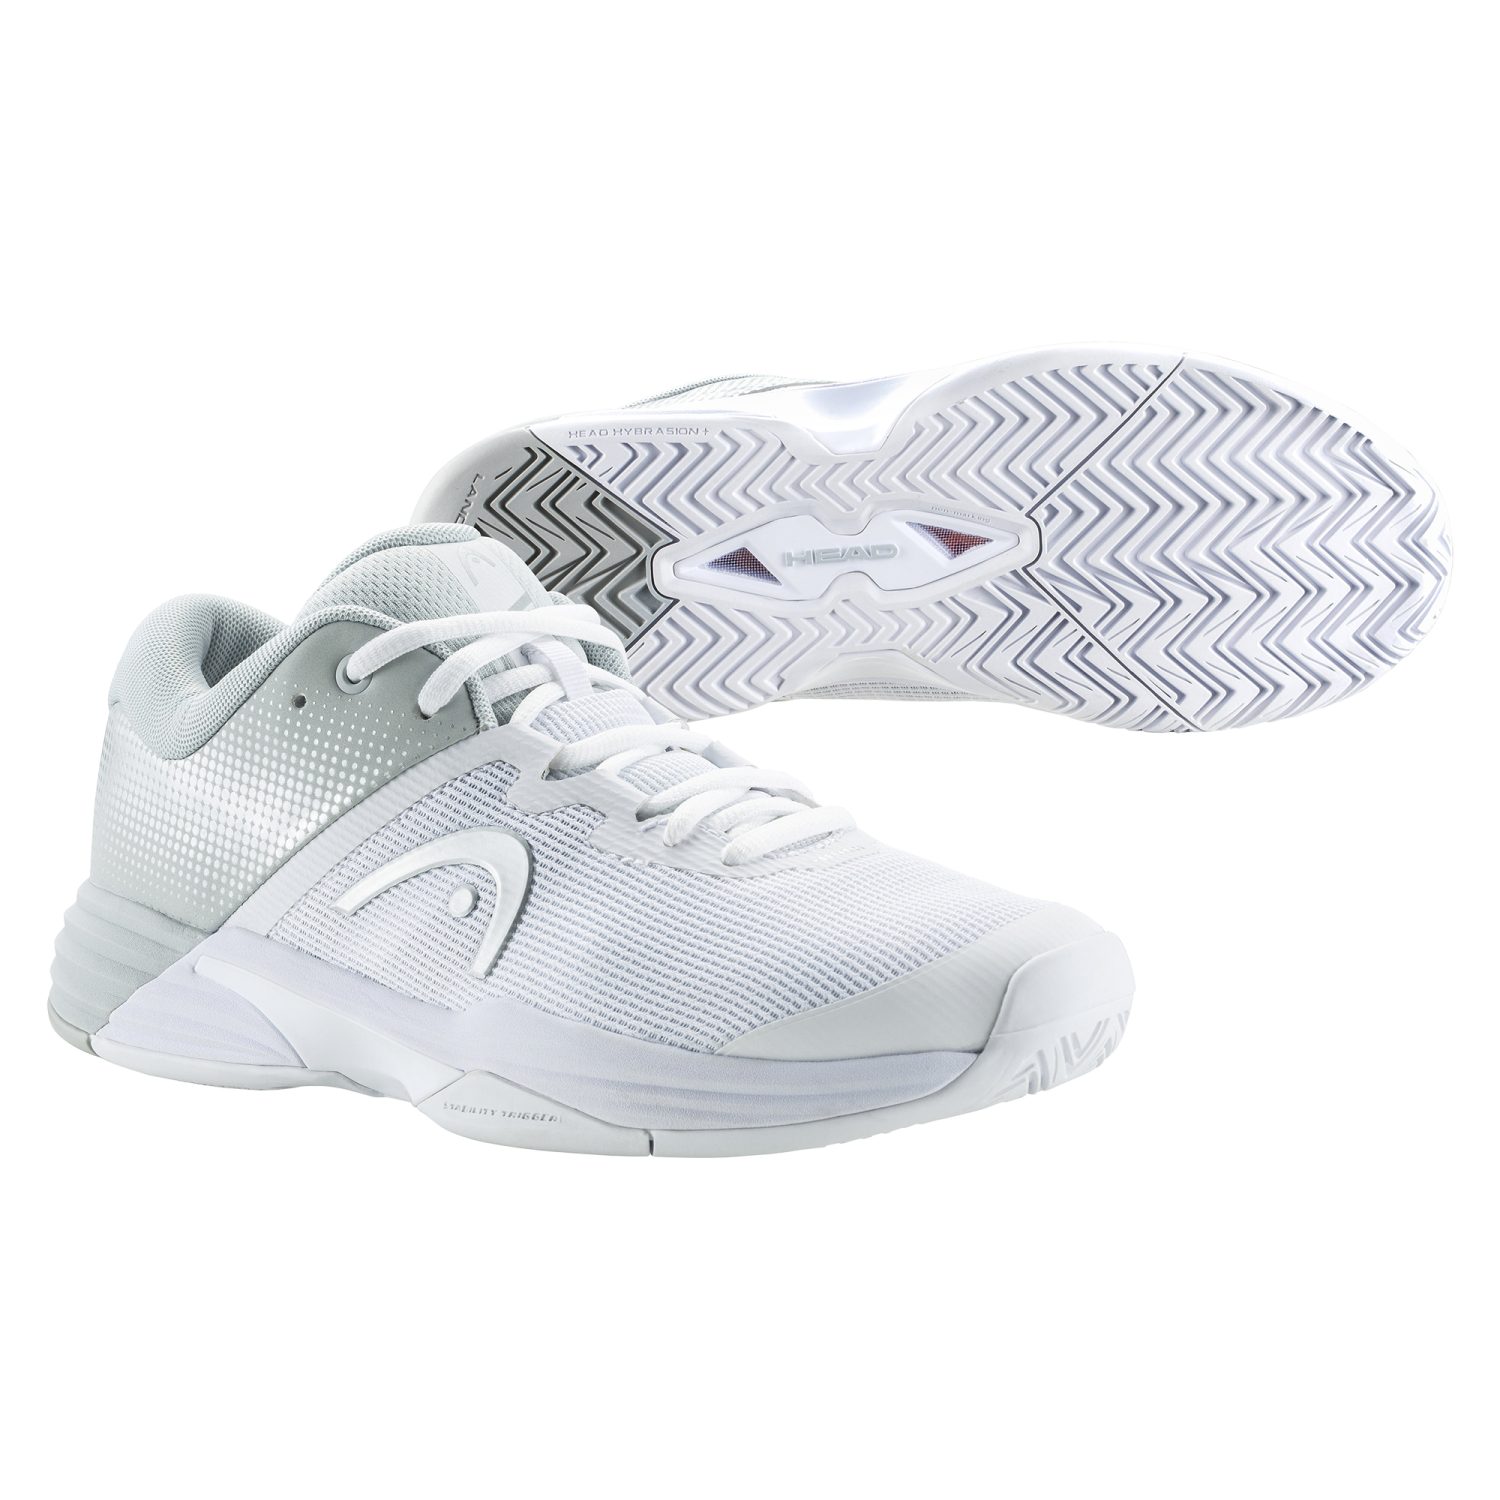 Damen Tennis Schuhe online kaufen | OTTO